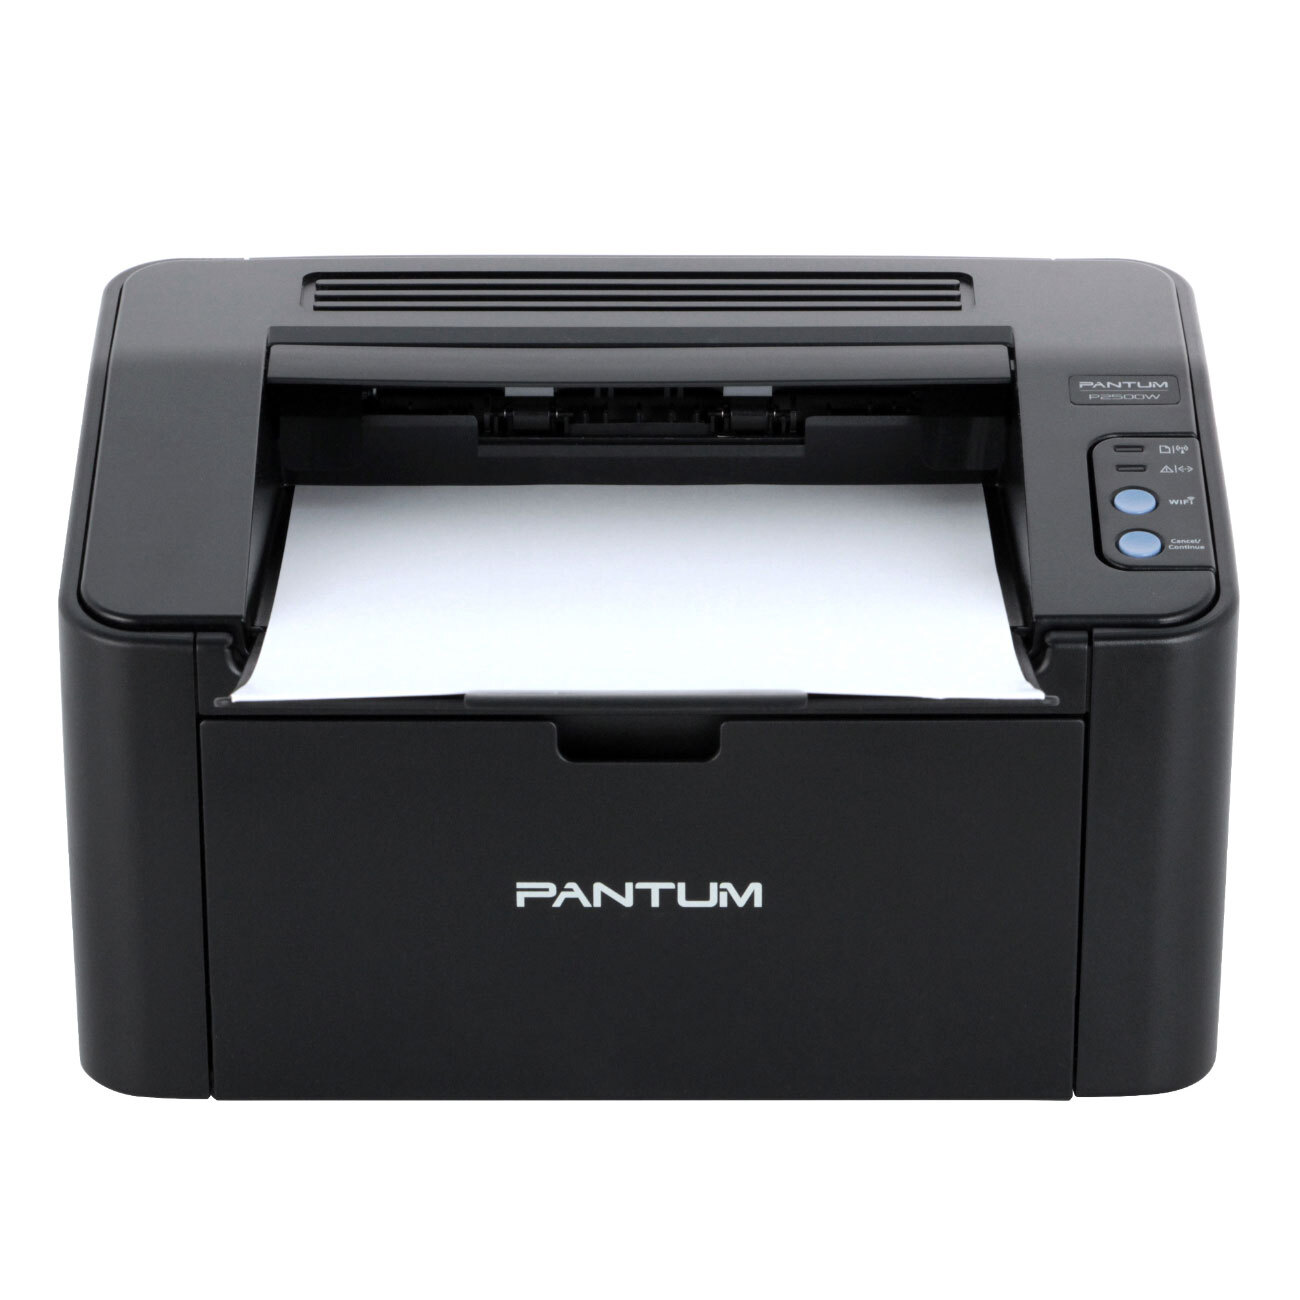 Недорогие принтеры для печати. Принтер лазерный Pantum p2516. Pantum p2500w. Принтер Pantum p2500w. Принтер лазерный Pantum p2518.